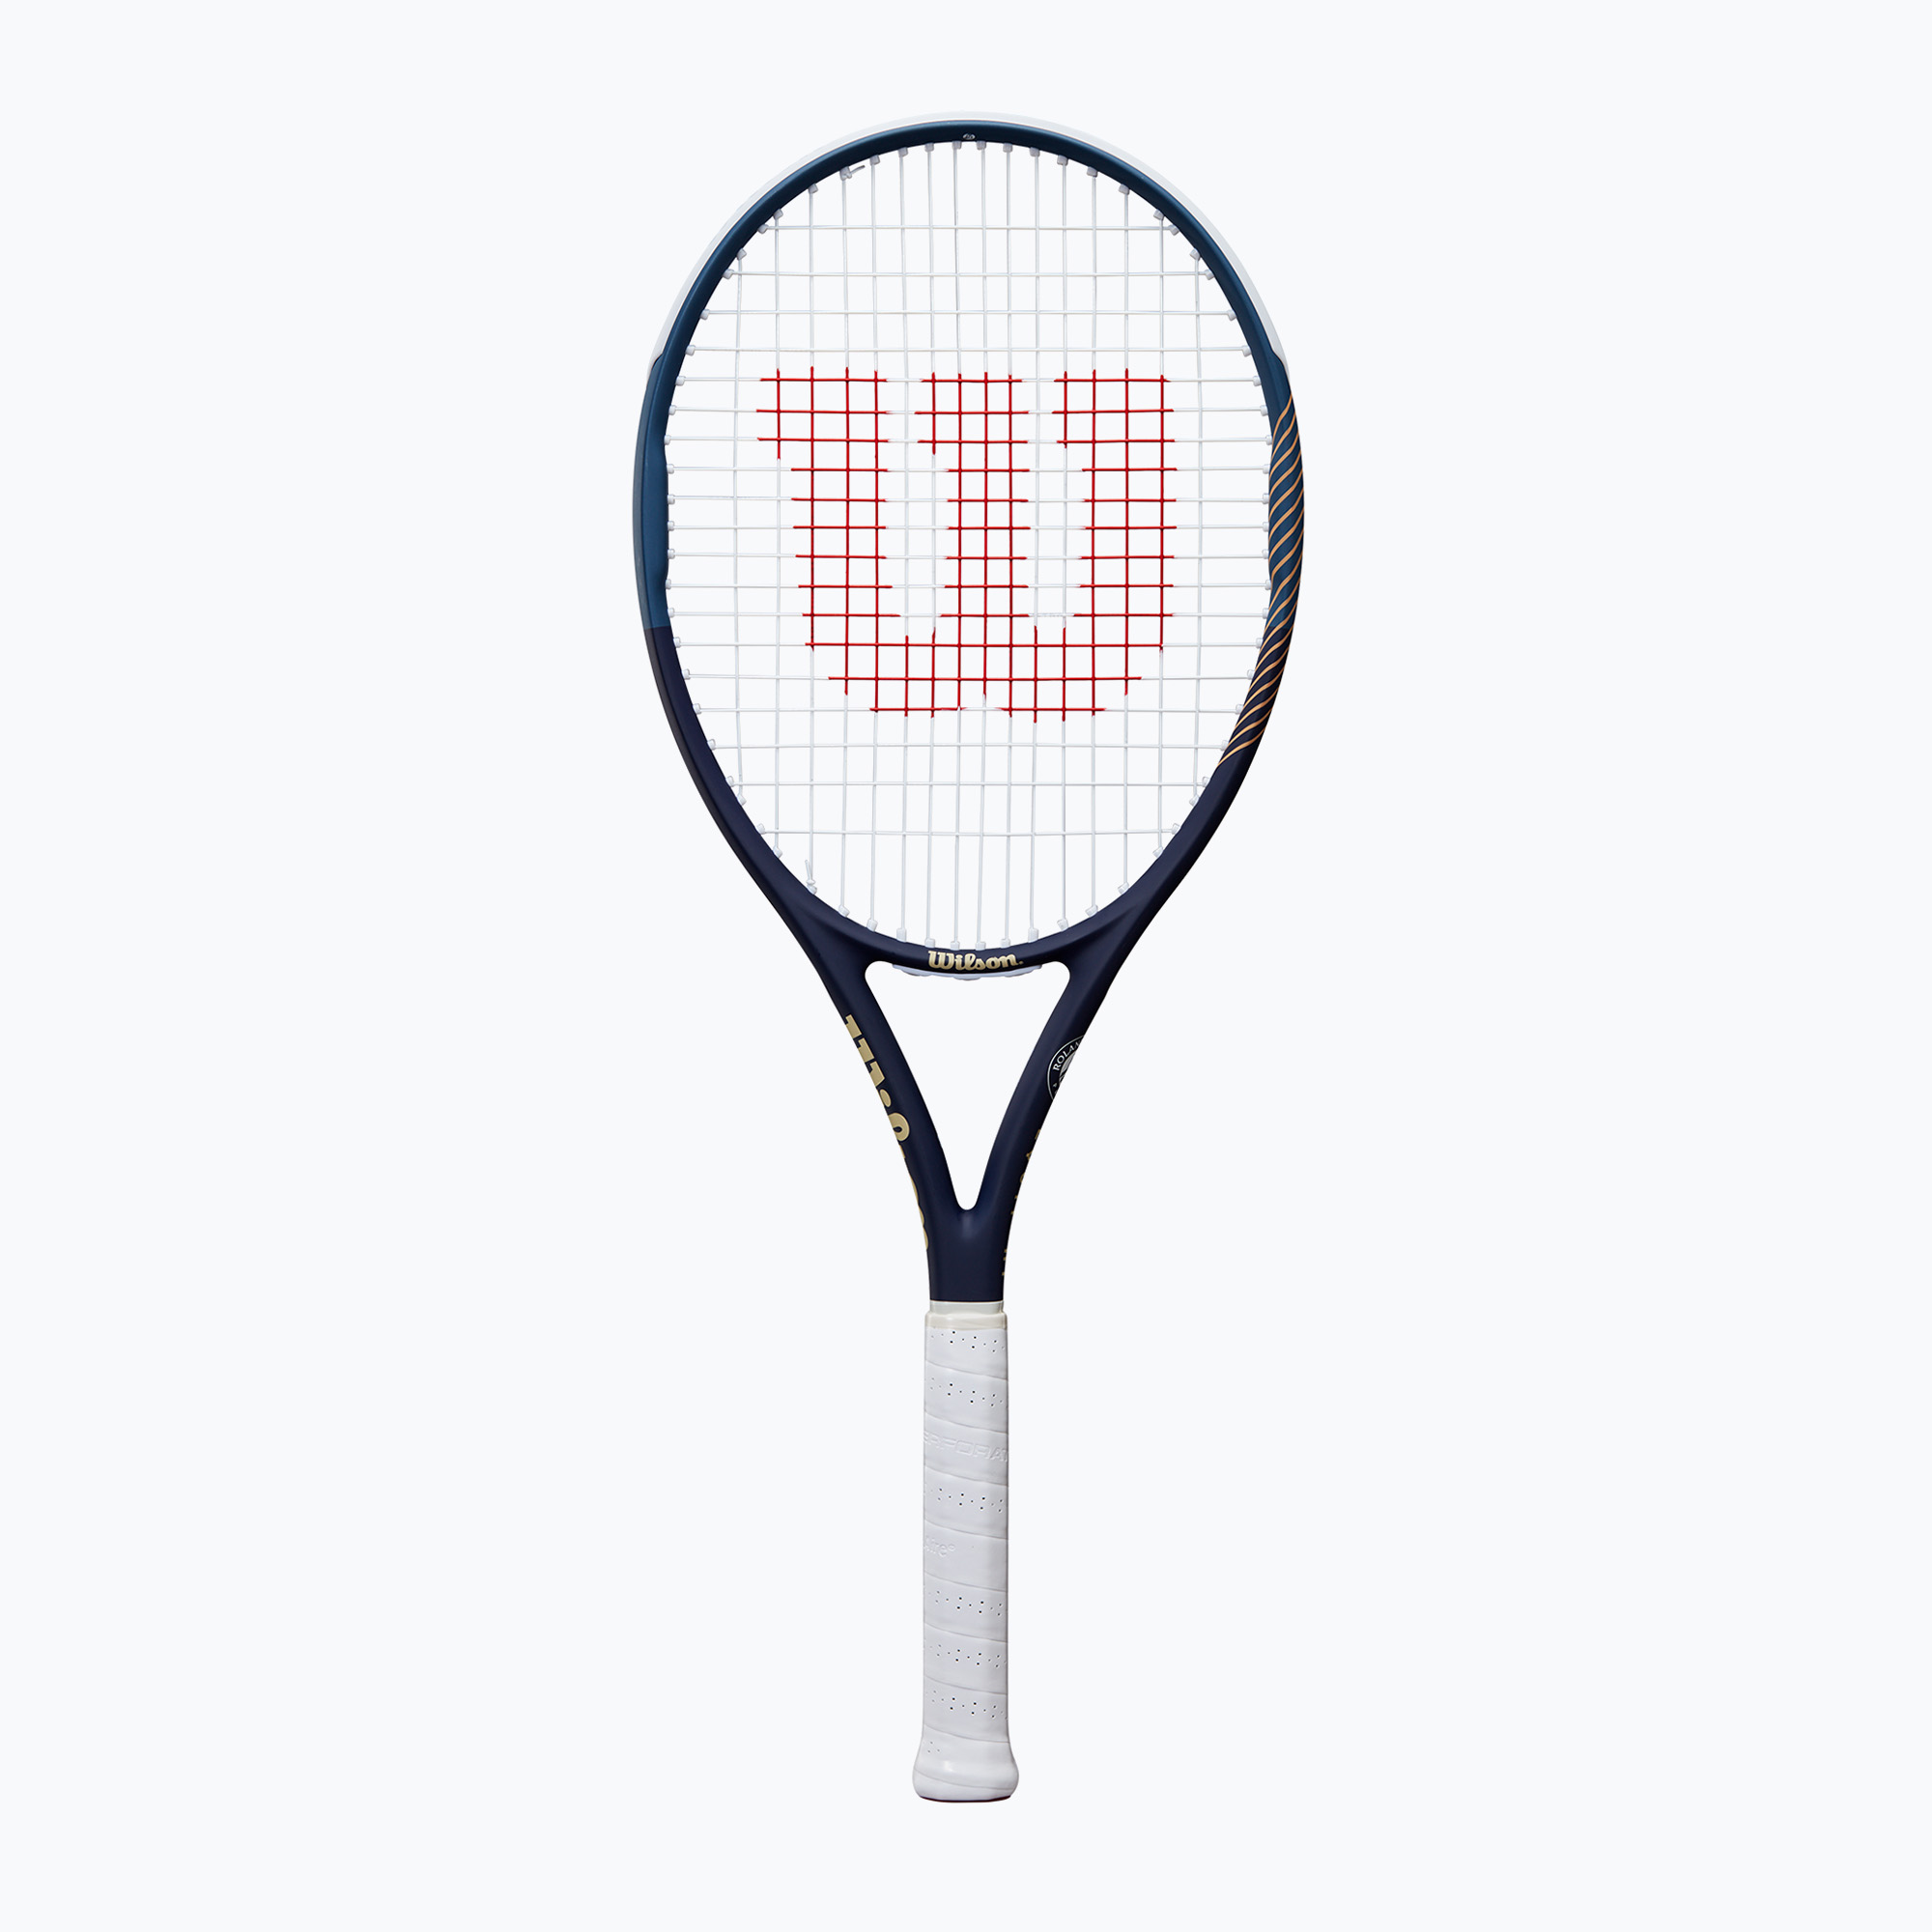 Тенис ракета Wilson Roland Garros Equipe Hp